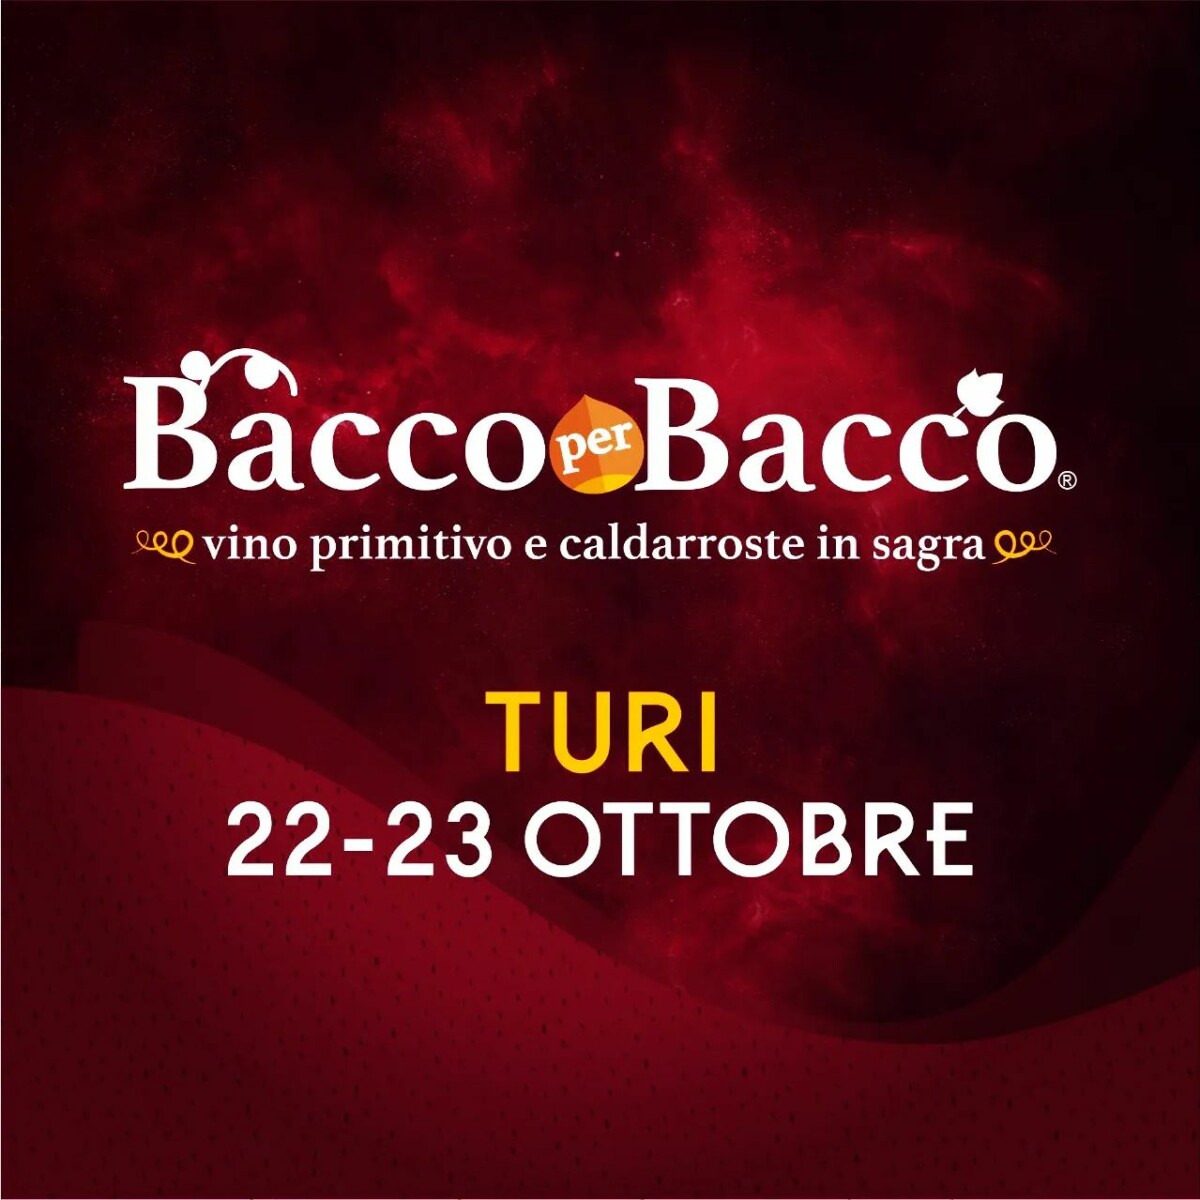 You are currently viewing Sagra del vino novello in Puglia: Bacco per Bacco a Turi